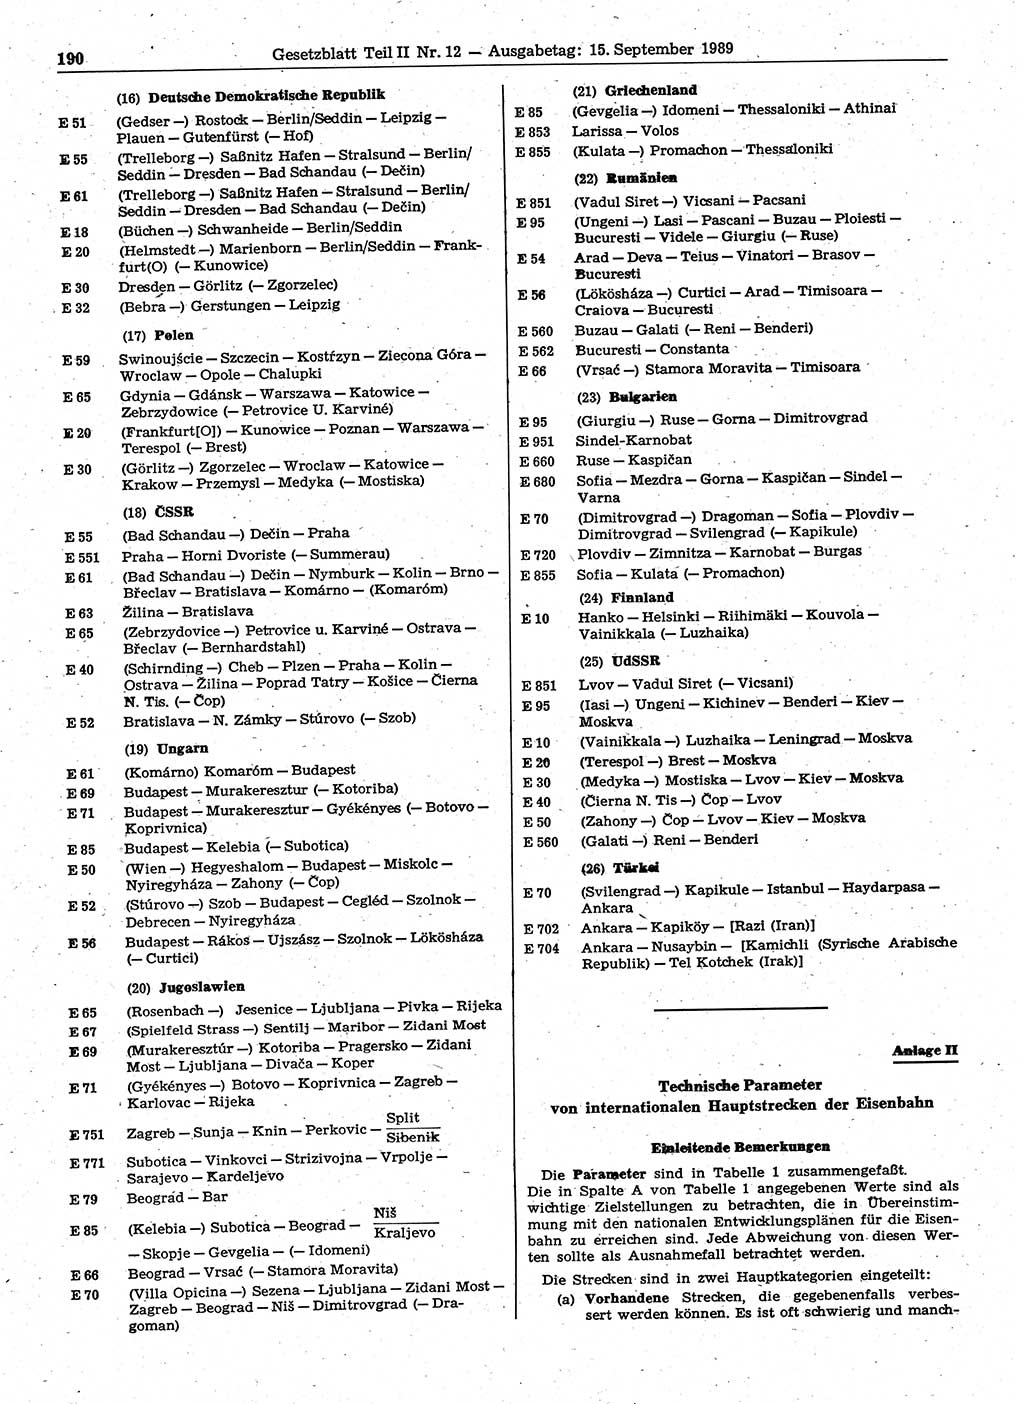 Gesetzblatt (GBl.) der Deutschen Demokratischen Republik (DDR) Teil ⅠⅠ 1989, Seite 190 (GBl. DDR ⅠⅠ 1989, S. 190)